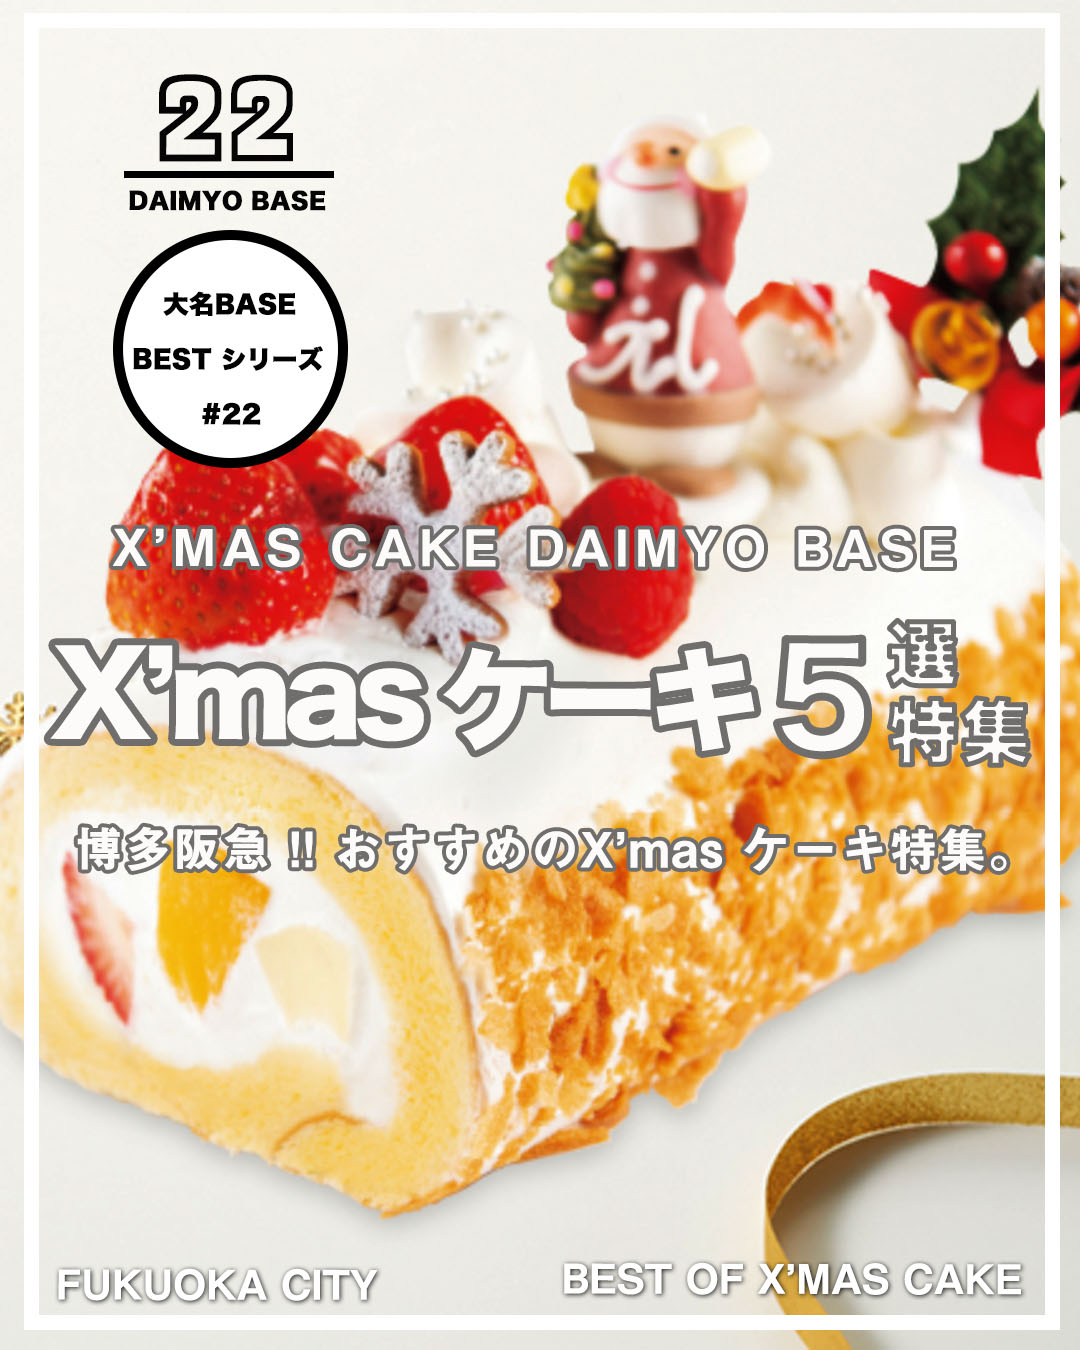 まだ間に合う 博多阪急のおすすめクリスマスケーキ 大名base Daimyo Base